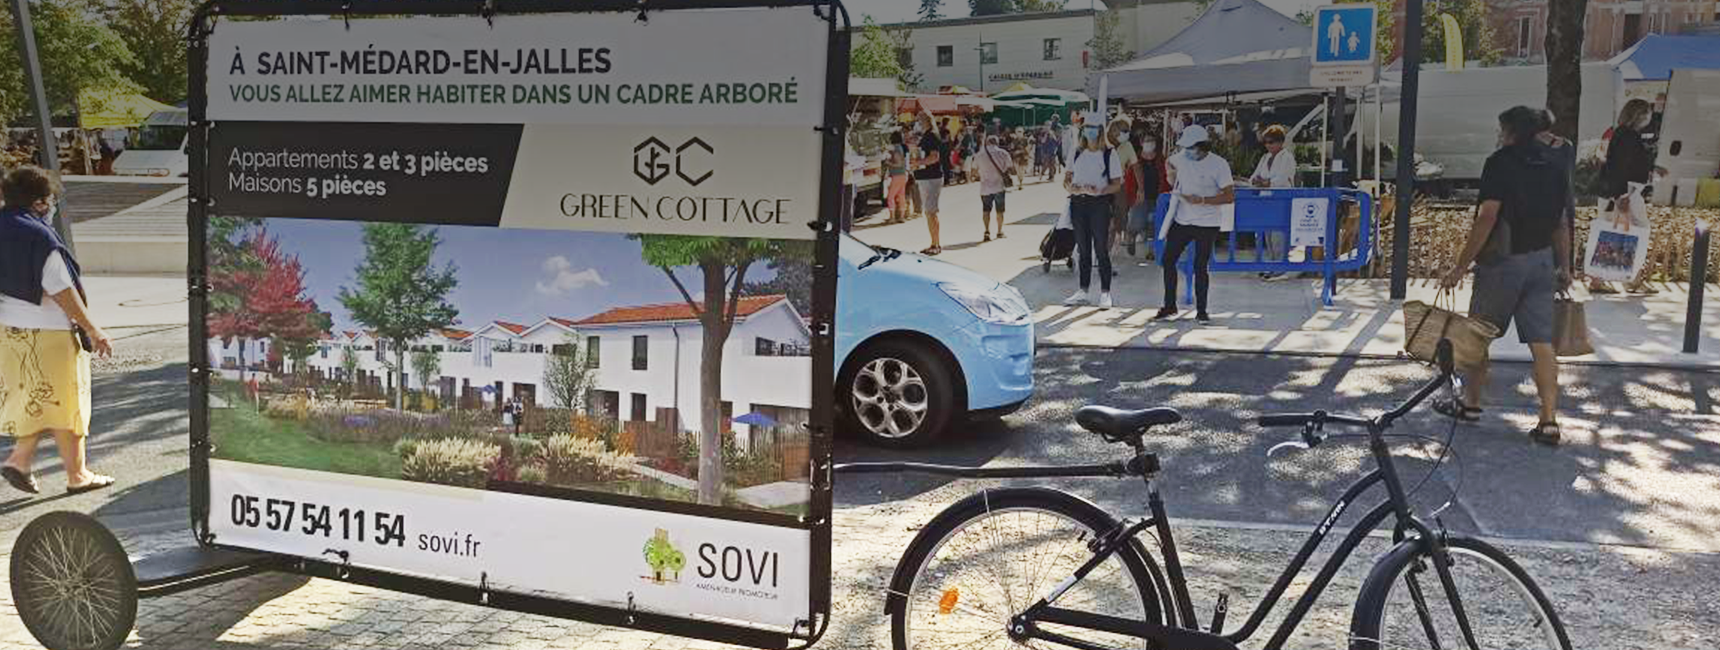 Promotion programme SOVI avec bike'com - Keemia Bordeaux agence de Marketing de référence Locale en région Aquitaine